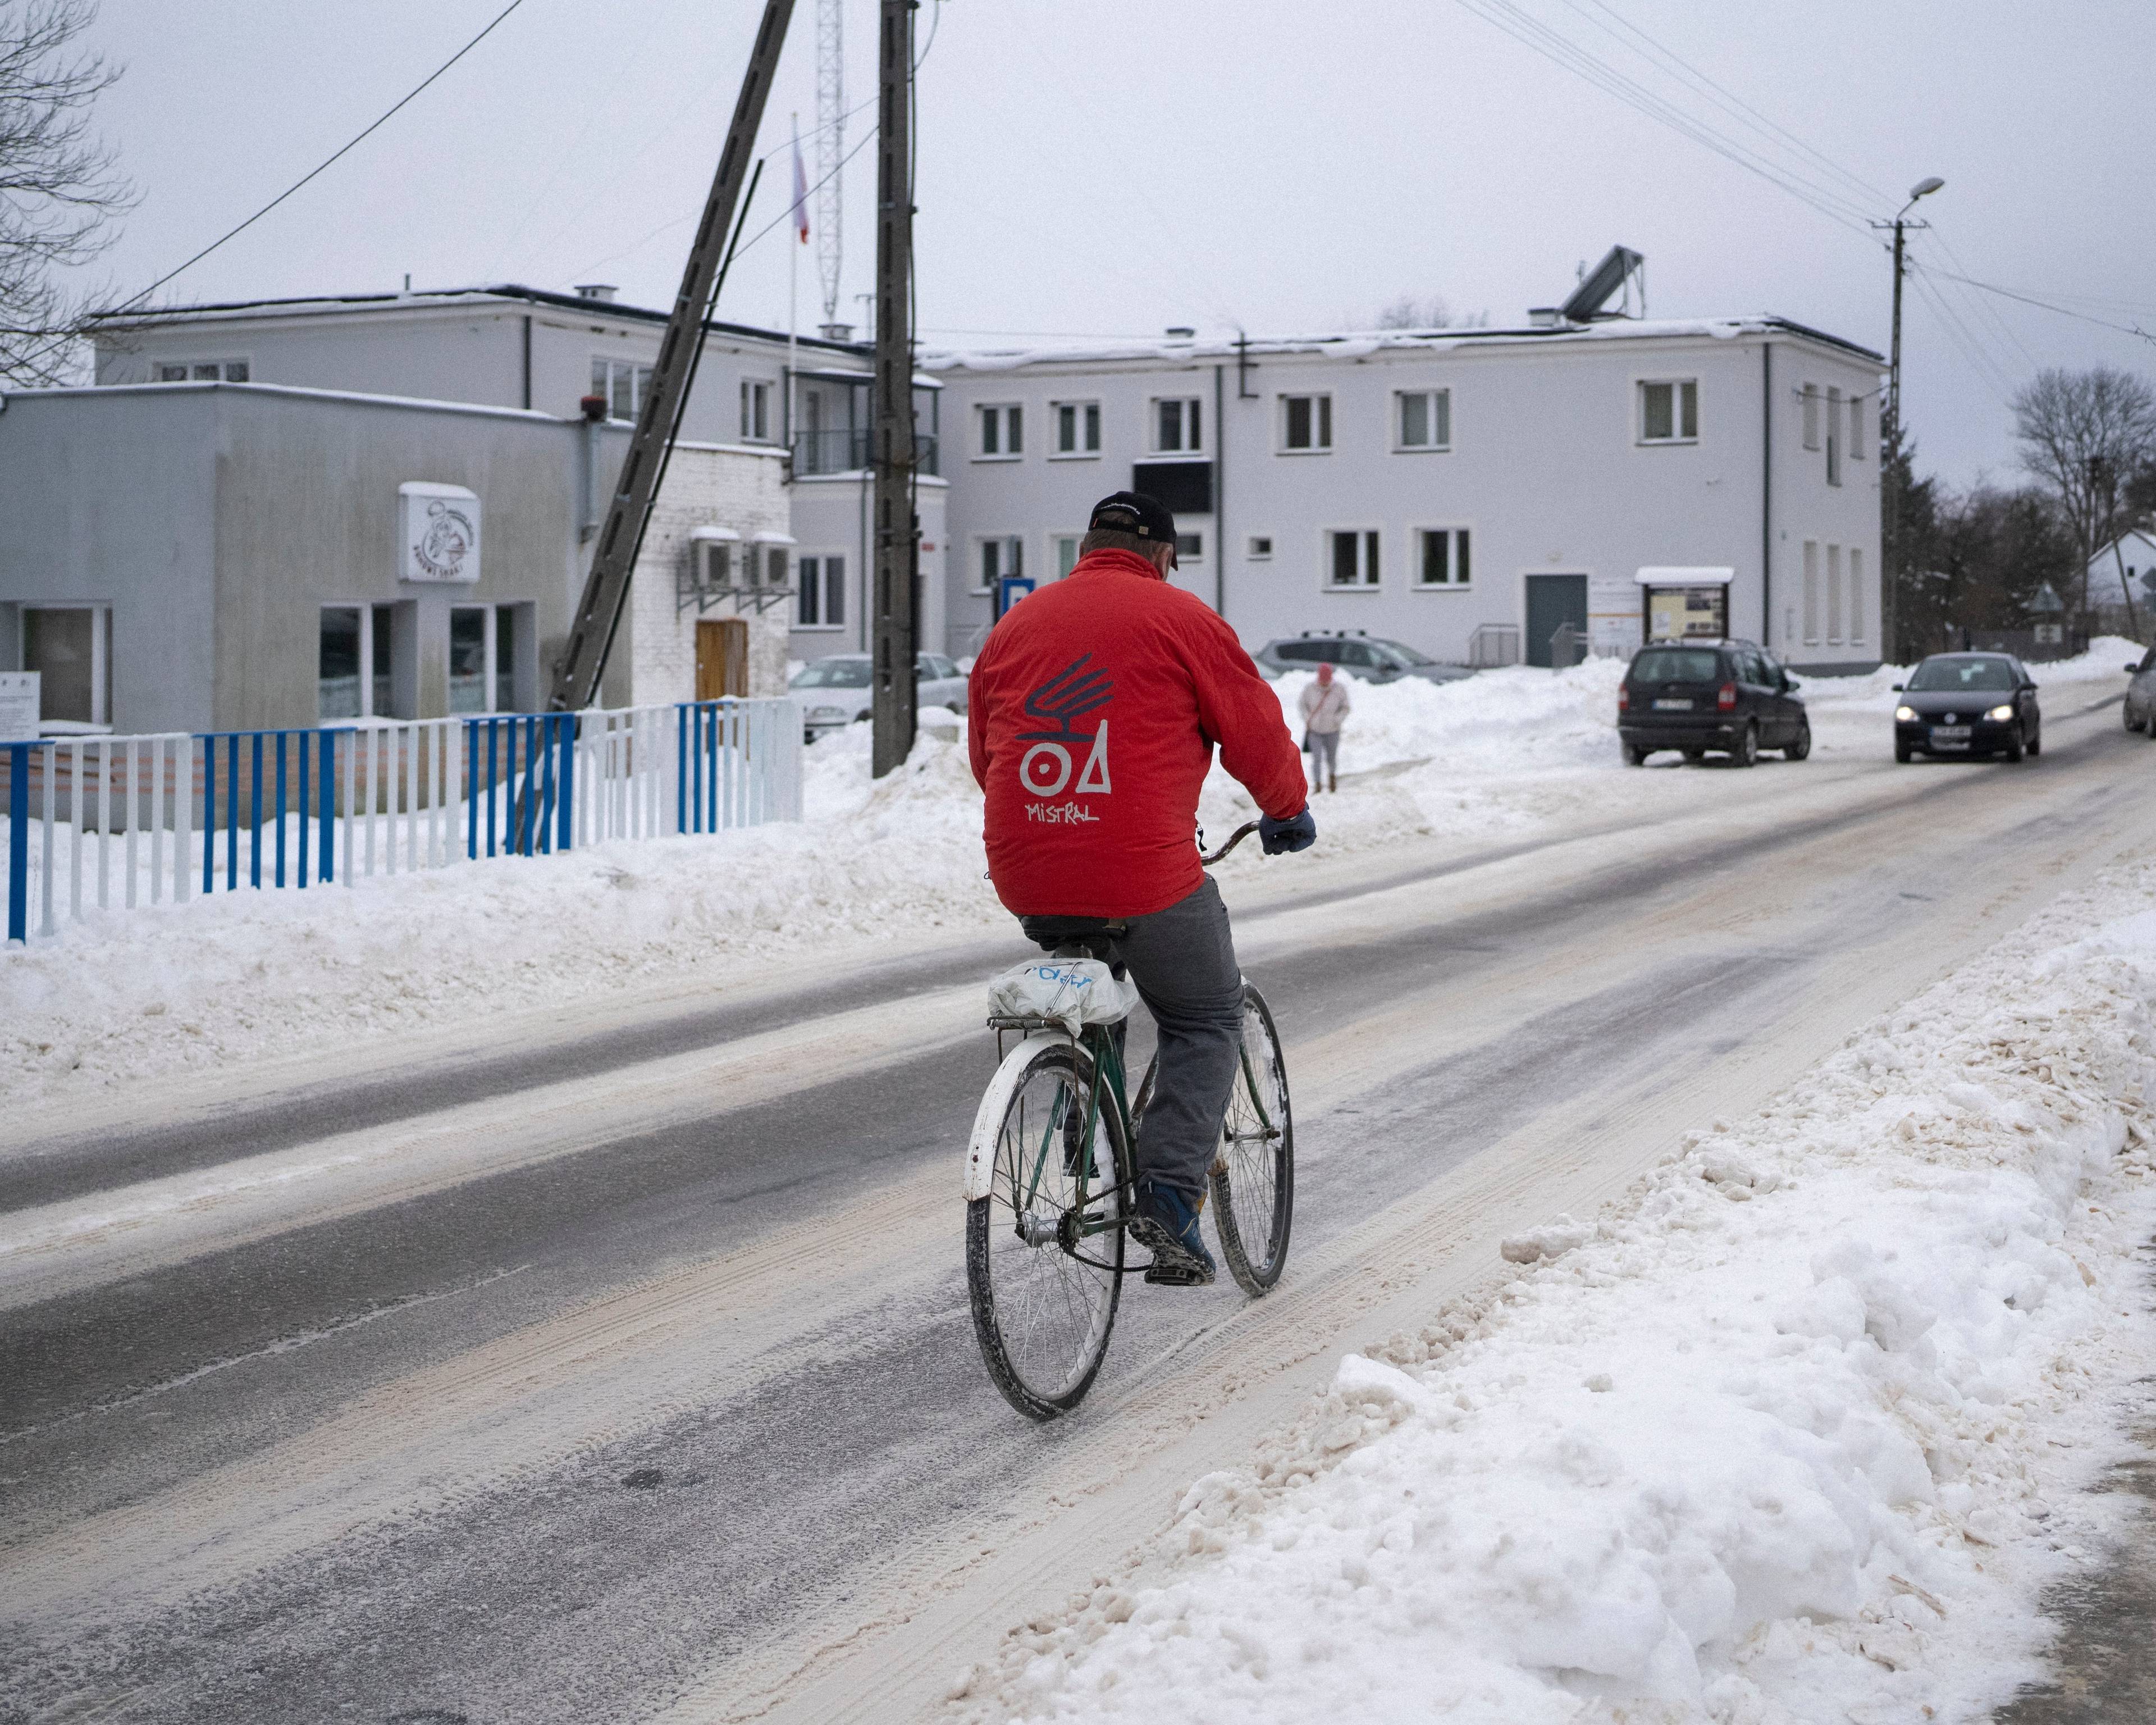 ośnieżona wiejska ulica, na mężczyzna w czerwonej kurtce jedzie na rowerze